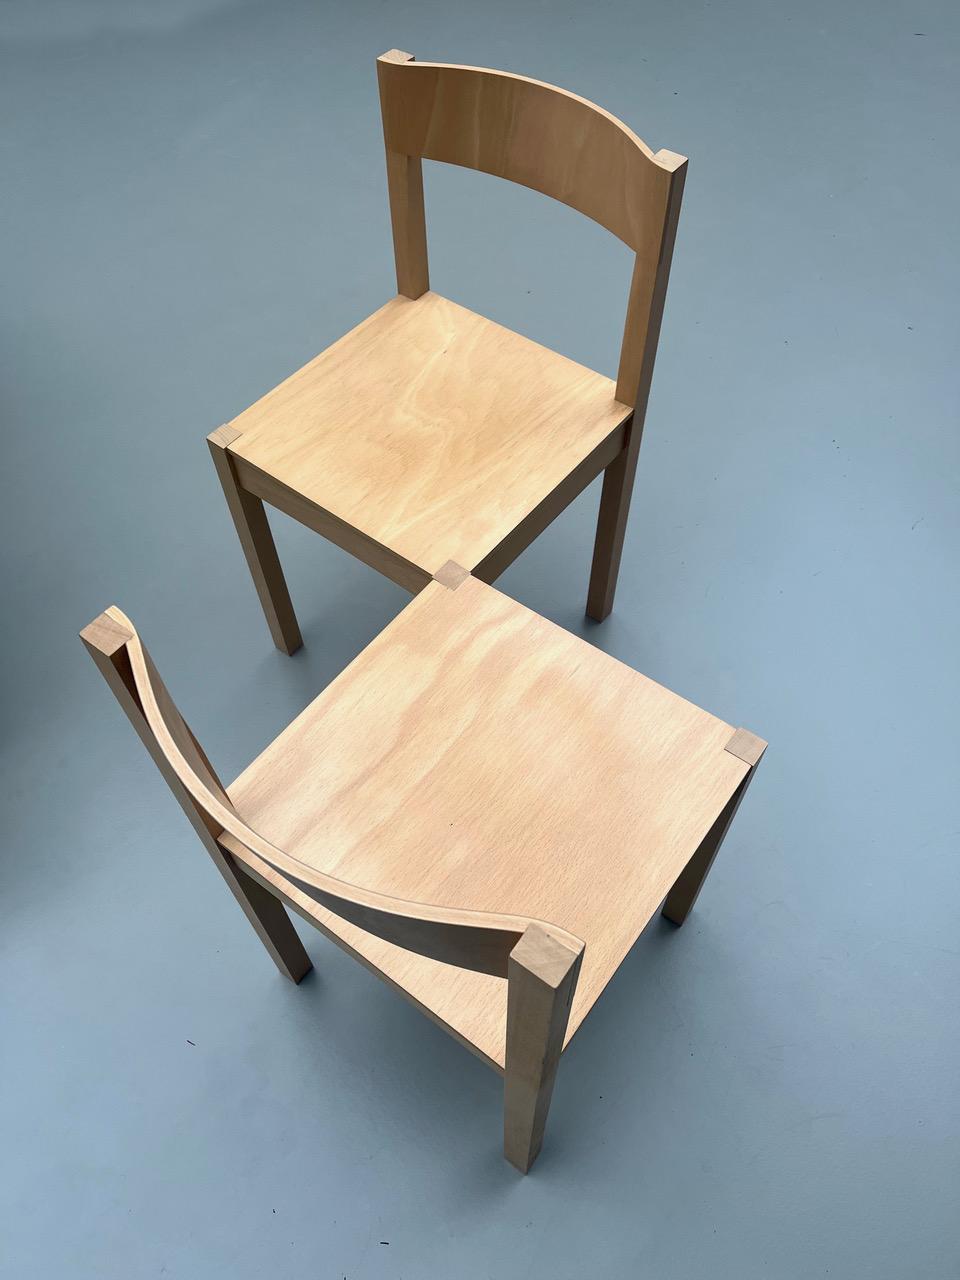 L'origine de cette œuvre remonte à 1989, lorsque, dans le cadre de son projet de fin d'études, Richard Hutten a lancé le premier de ses meubles 